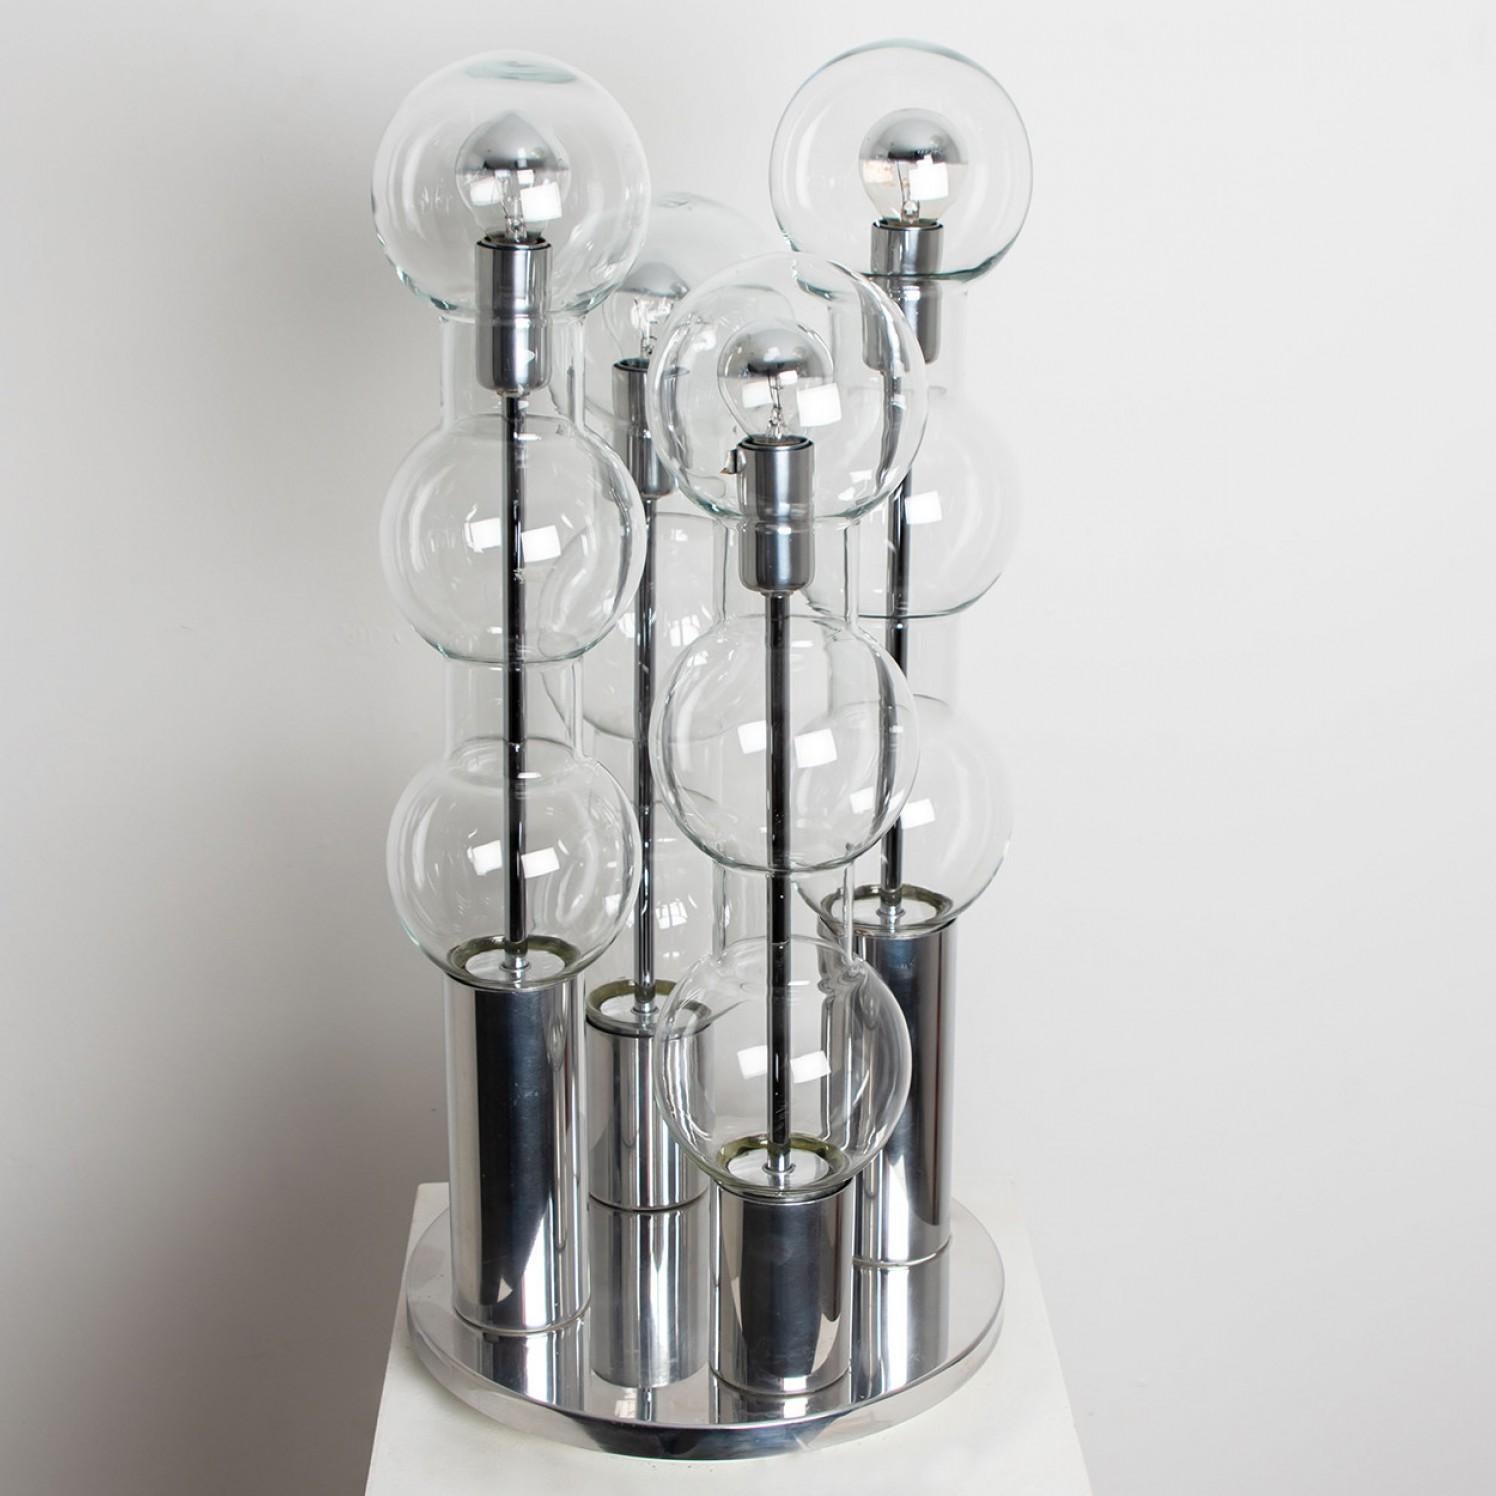 Quatre tubes bulles en verre soufflé à la main Doria sur une base chromée. Fabriqué par Doria Leuchten Allemagne, vers 1970. Cet objet exceptionnel de design moderne reflète l'intérêt extrême porté au modernisme en Europe à cette époque. Cette lampe